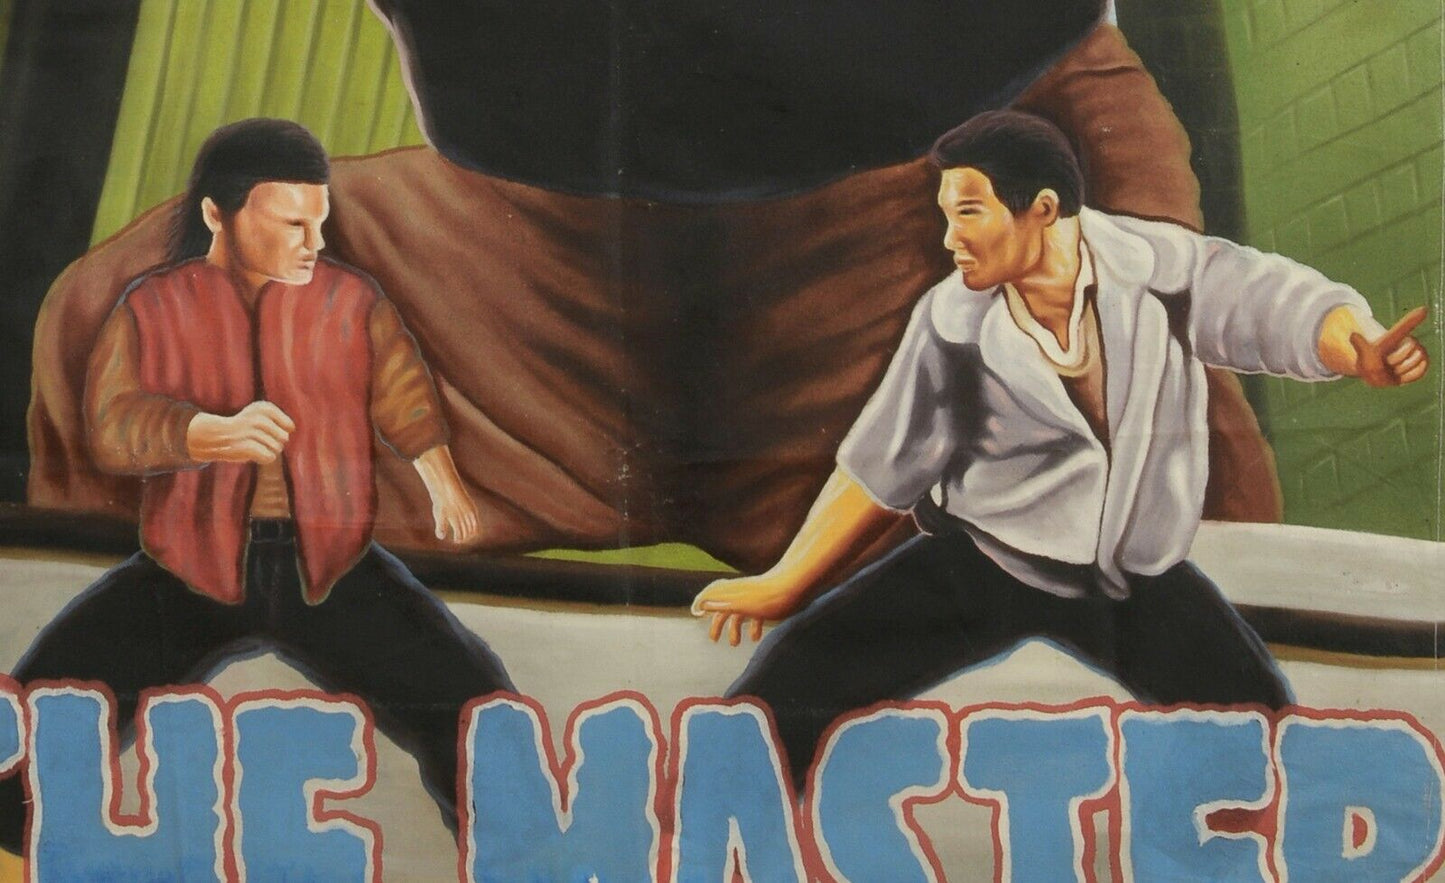 Αφίσα ταινίας της Γκάνας Αφρικανικός κινηματογράφος αουτσάιντερ ζωγραφισμένος καμβάς από αλεύρι σακί MASTER - Tribalgh